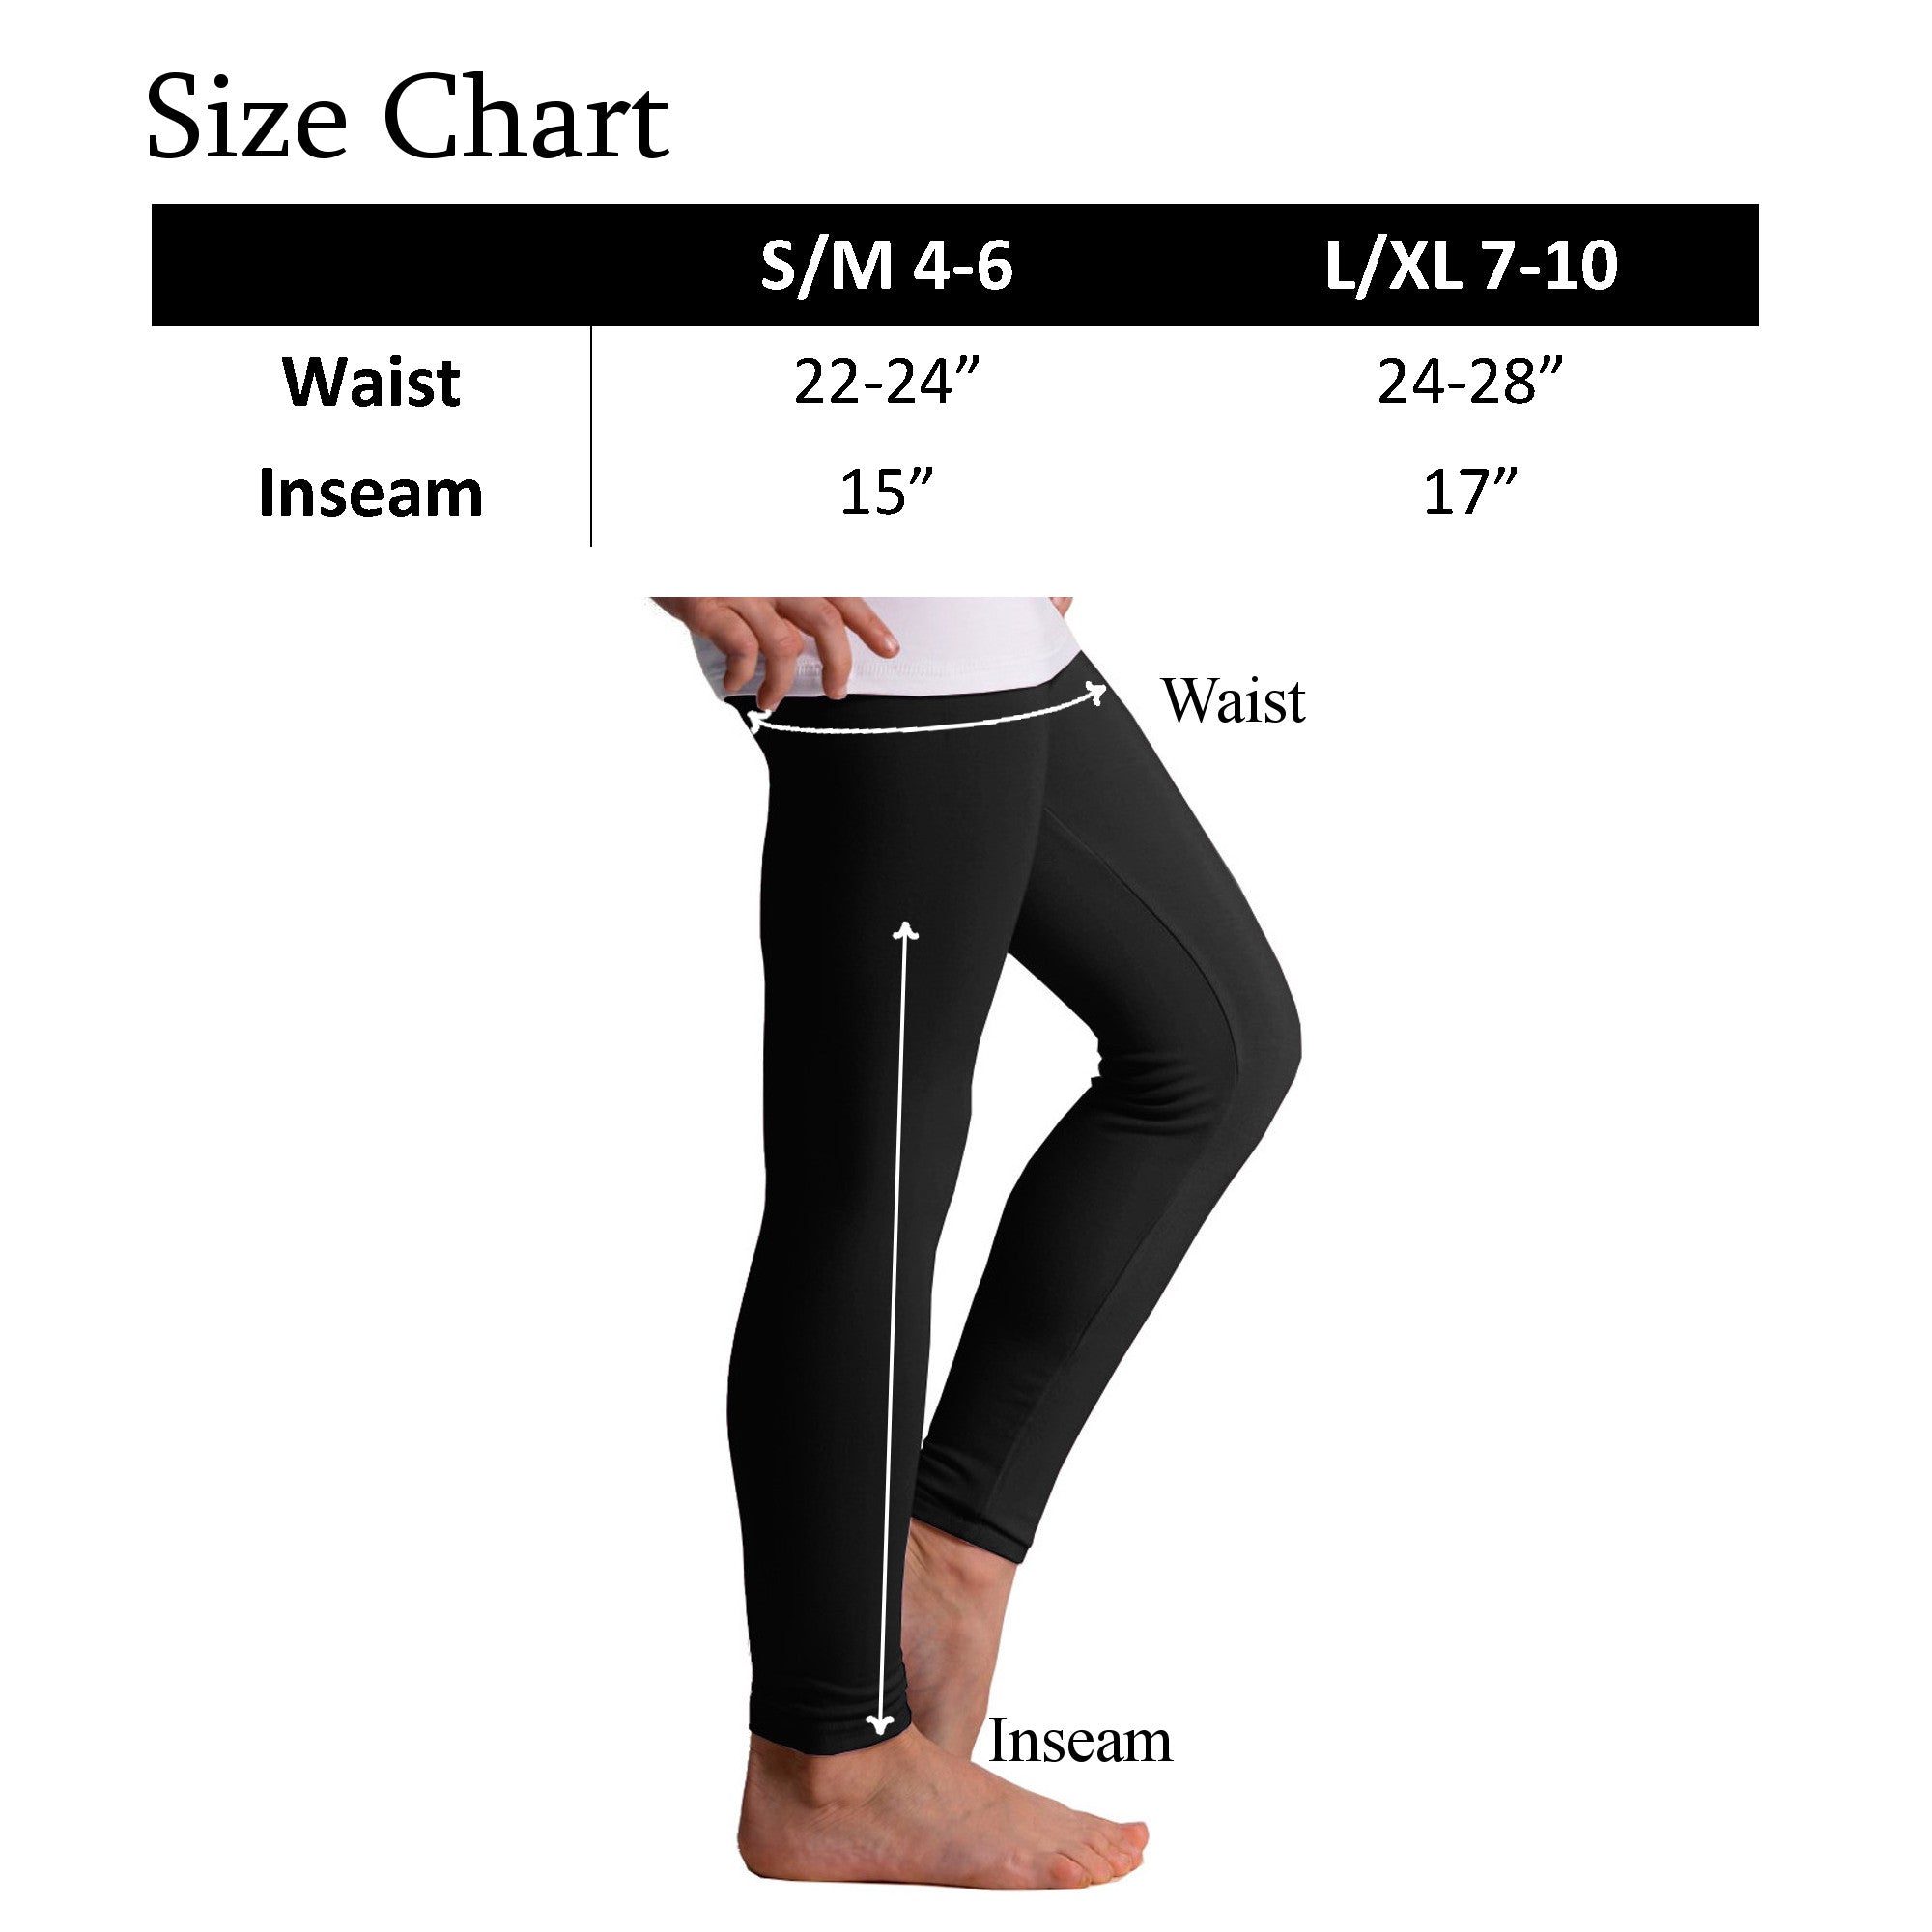 What Size Is Xl In Leggings? – solowomen